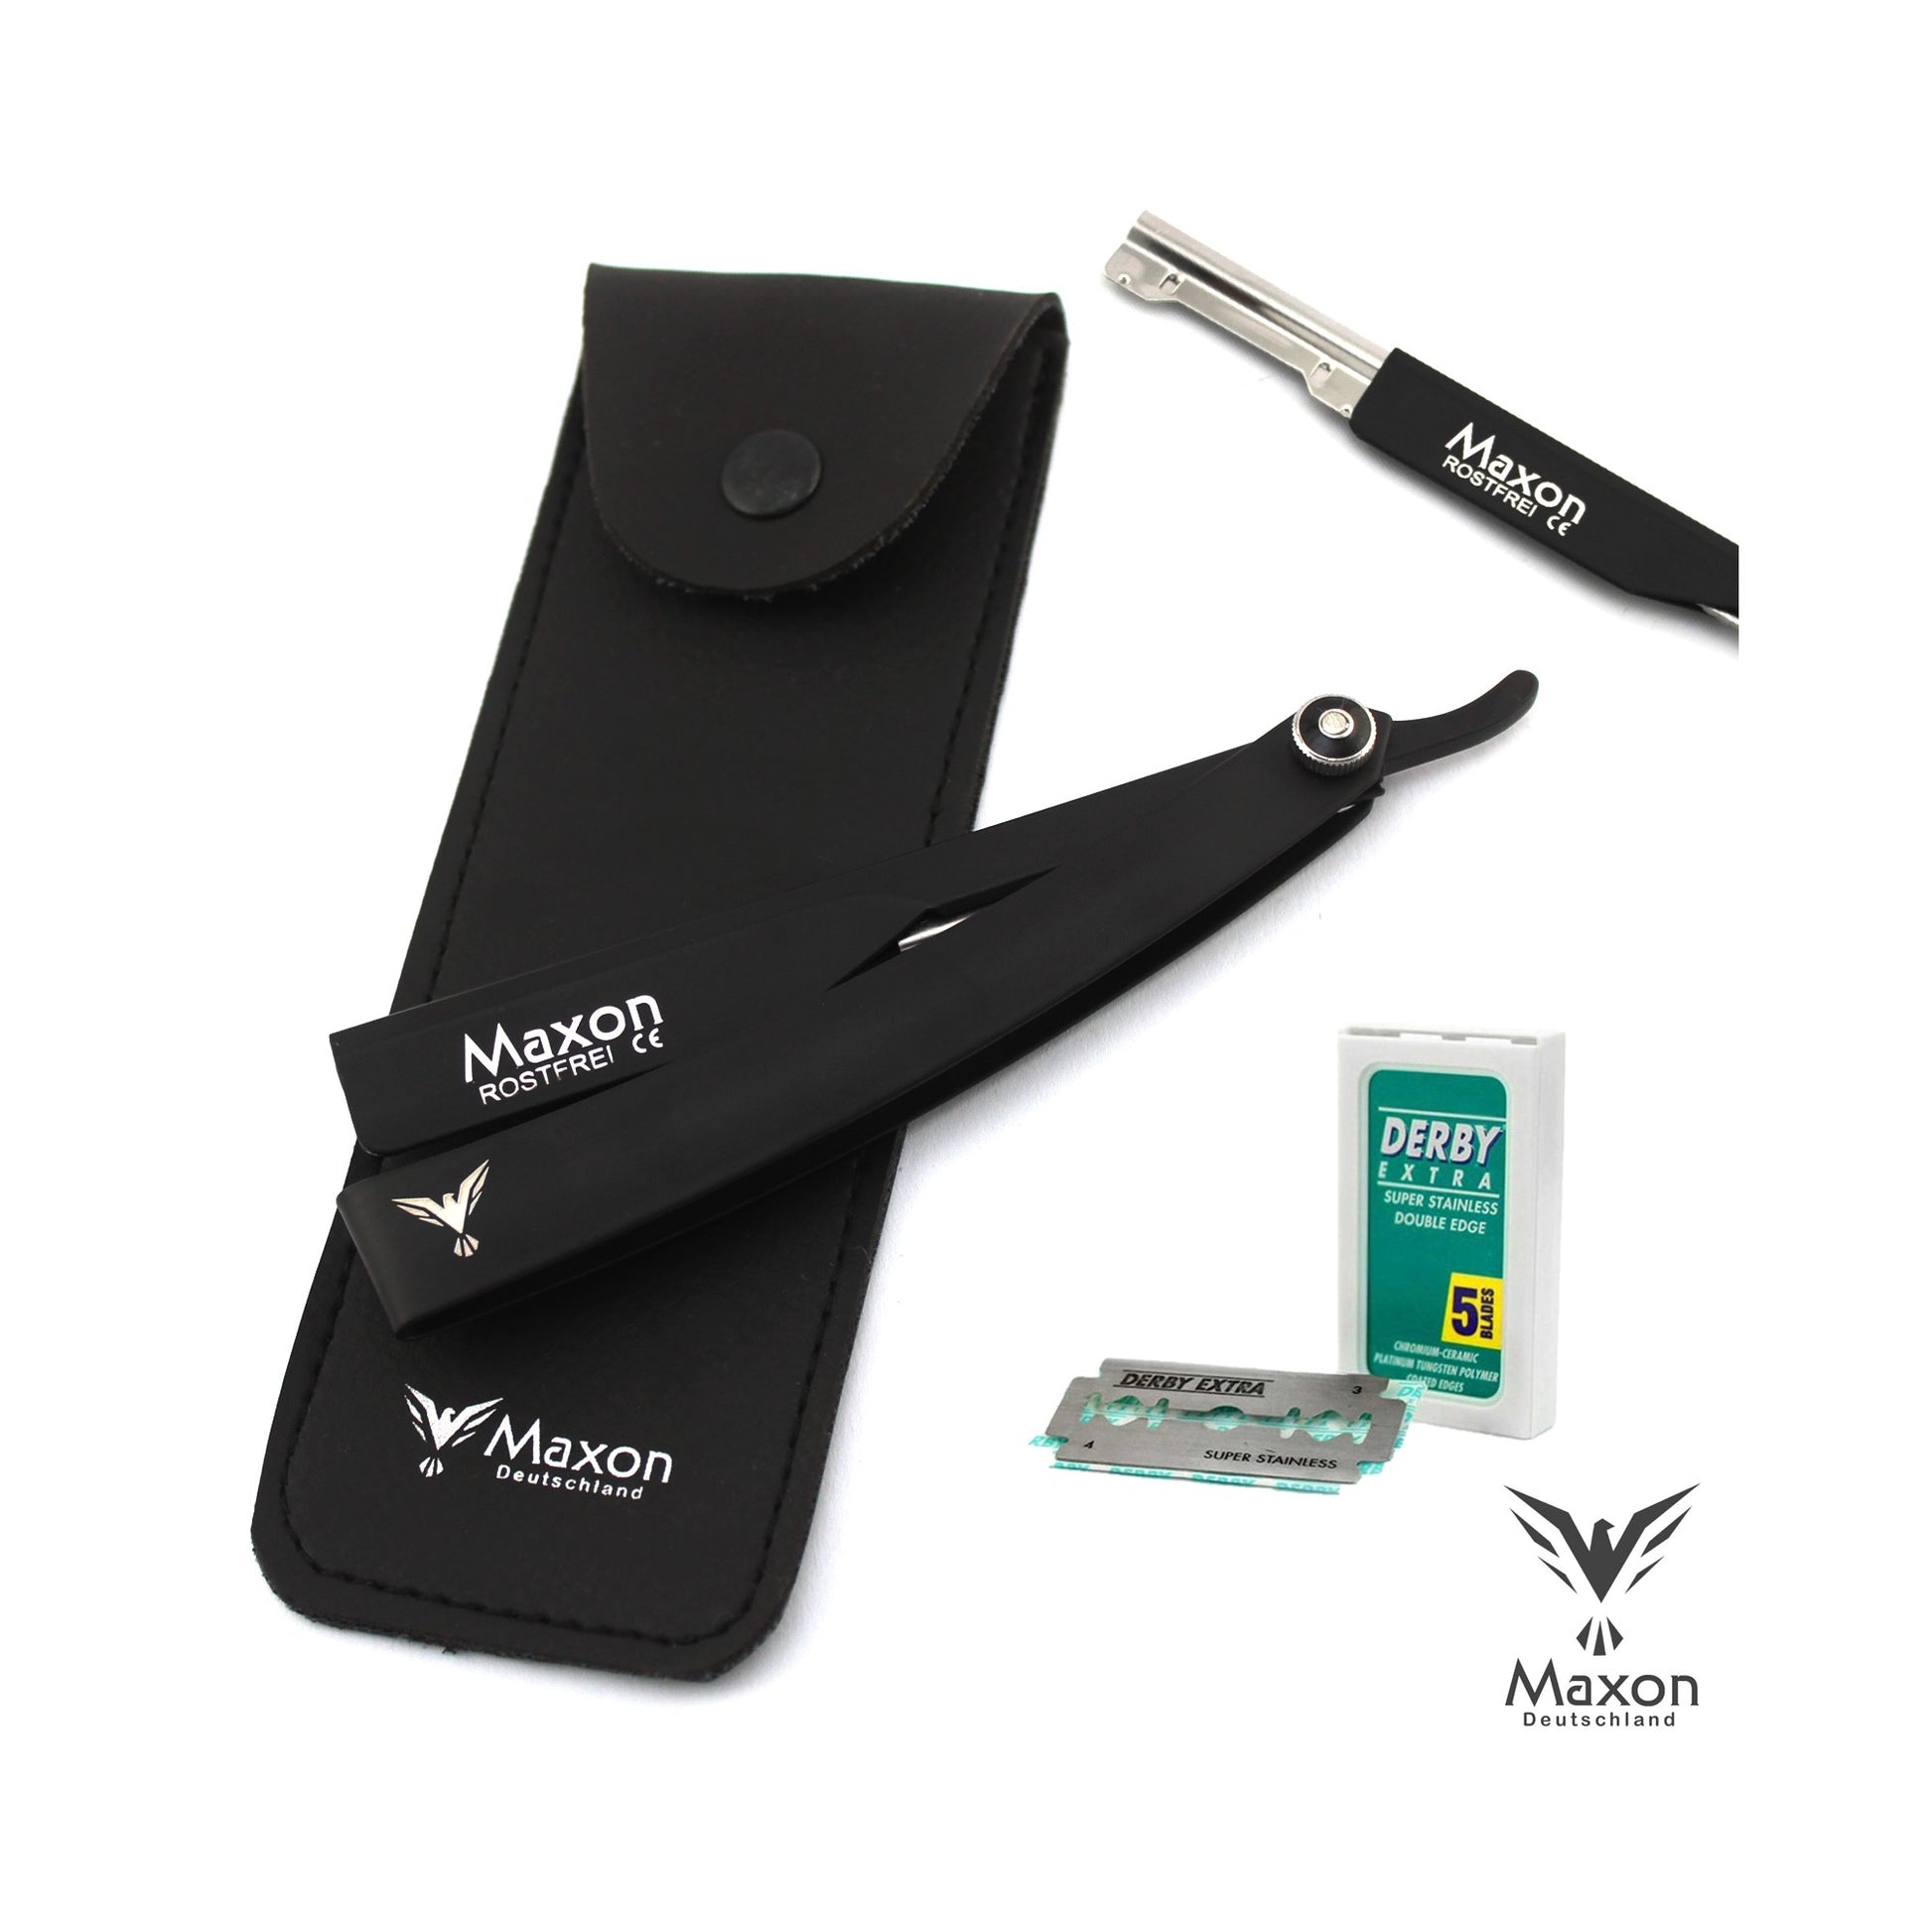 Maxon EN Black Straight Razor set stainless steel shaving set - HAB 